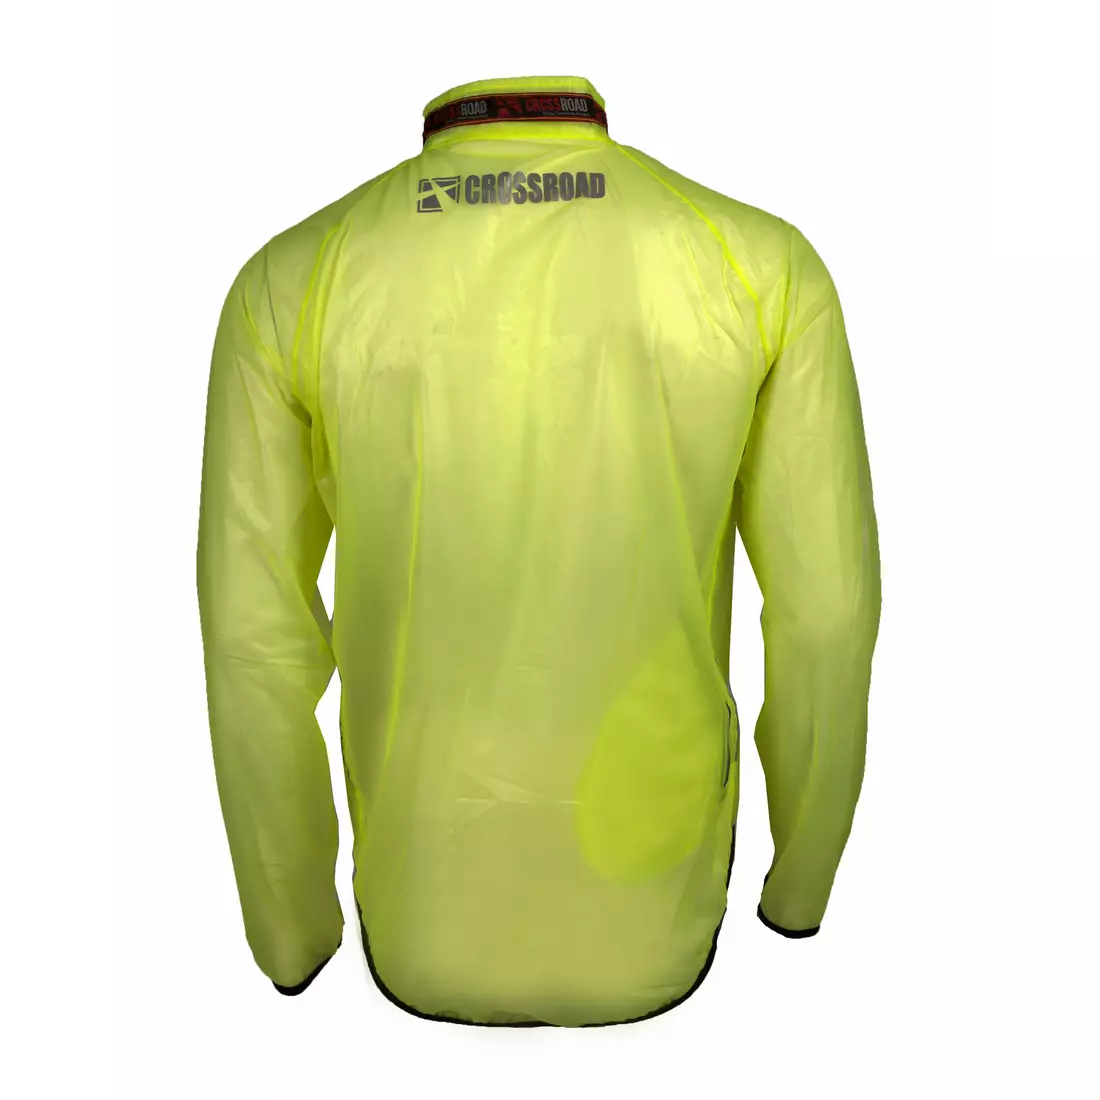 CROSSROAD RACE ultraleichte regenfeste Fahrradjacke, transparent-fluor